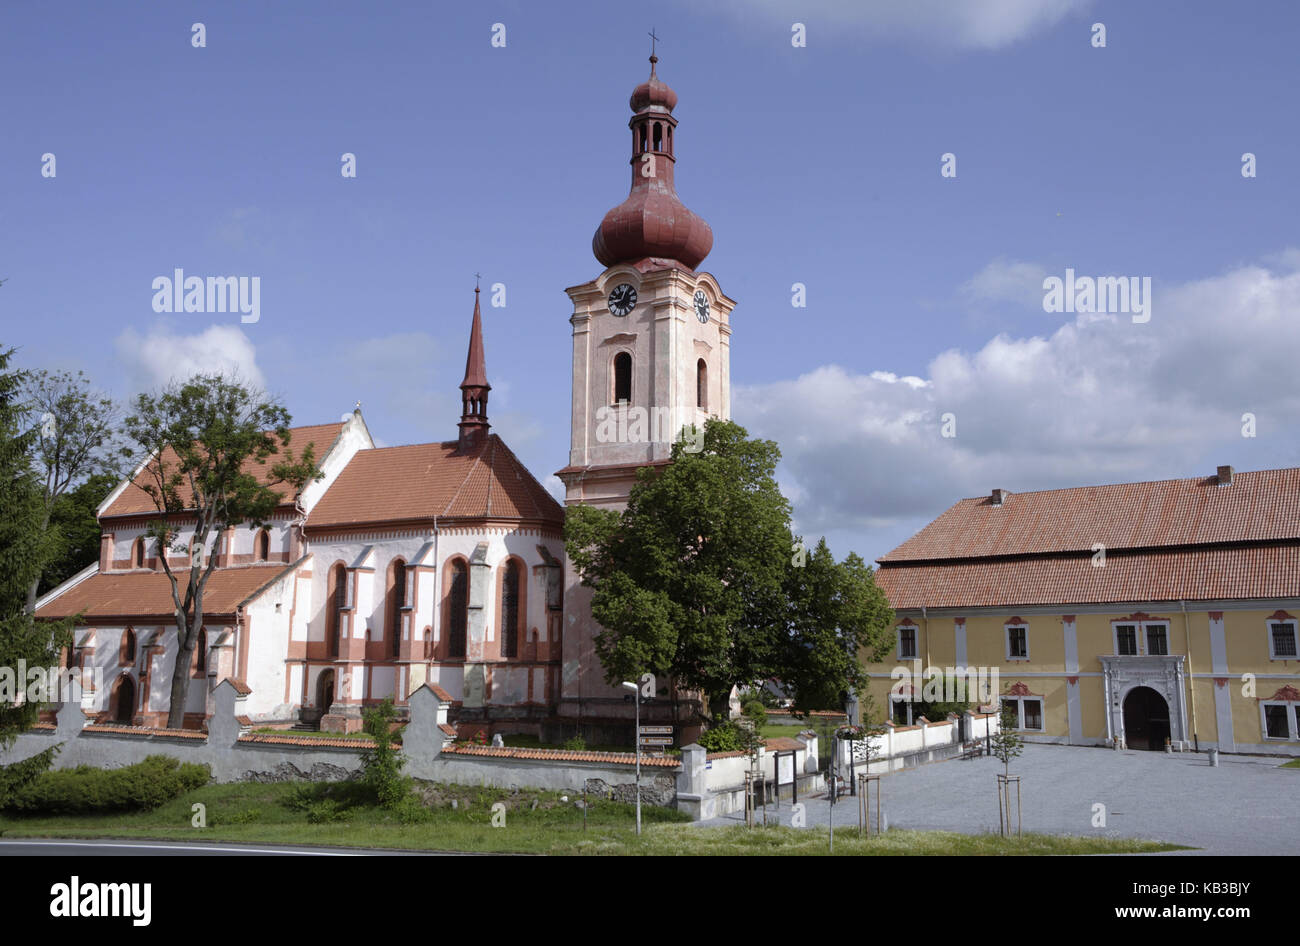 El gótico de San Jakobuskirche en el espacio de Pschesanitzer, la ciudad de Nepomuk, Bohemia del oeste, República Checa, Europa, Foto de stock